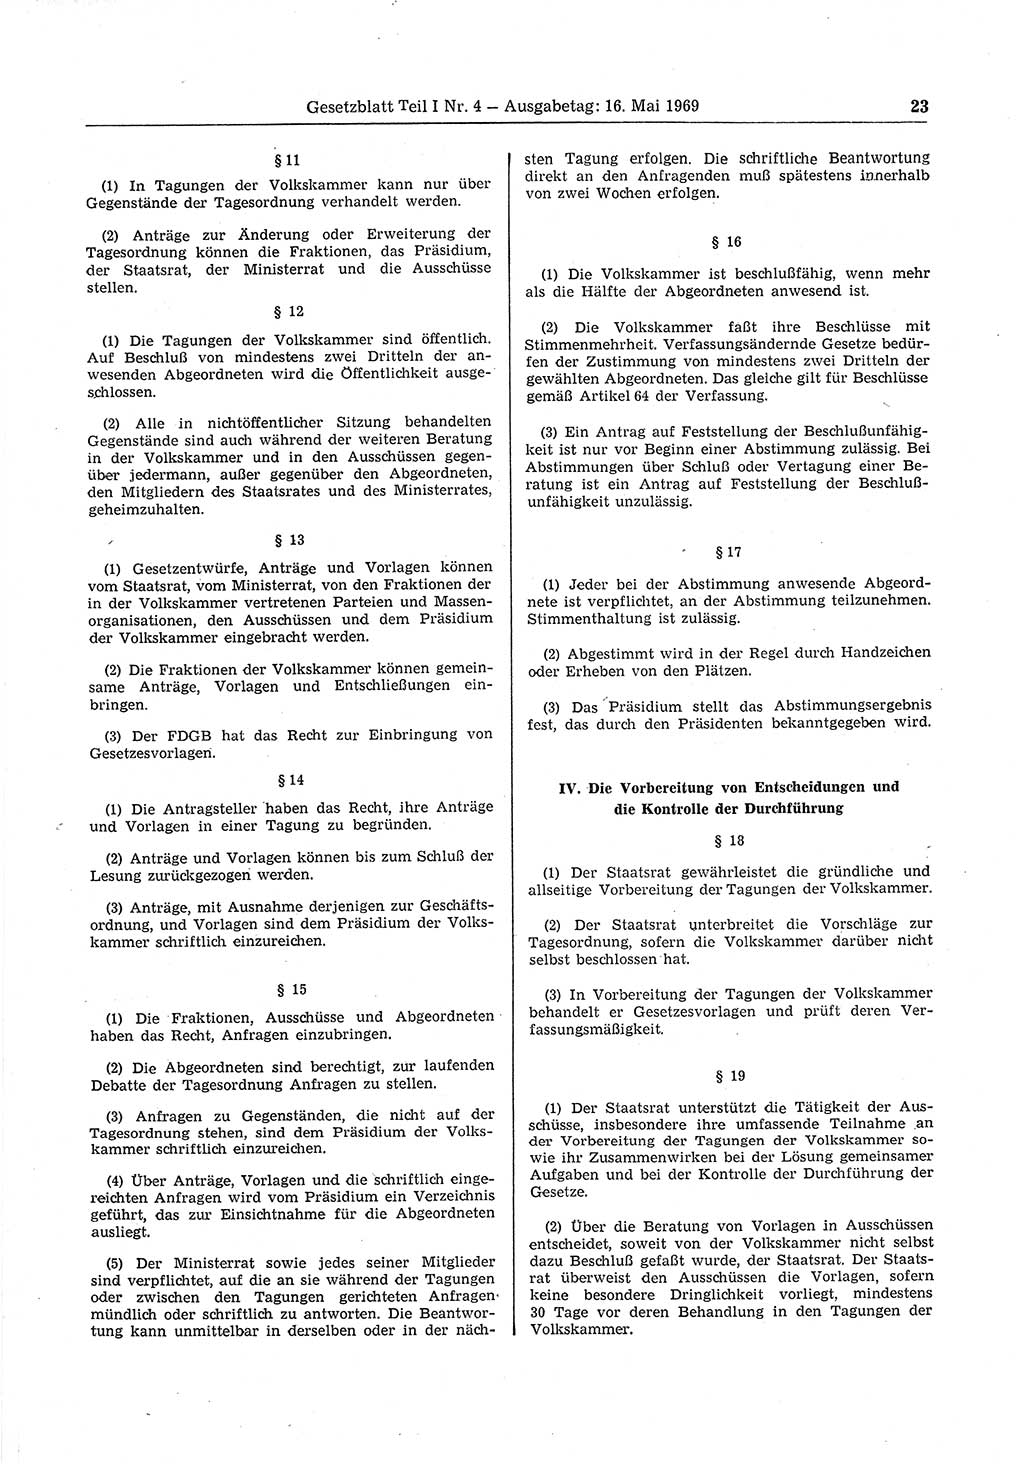 Gesetzblatt (GBl.) der Deutschen Demokratischen Republik (DDR) Teil Ⅰ 1969, Seite 23 (GBl. DDR Ⅰ 1969, S. 23)